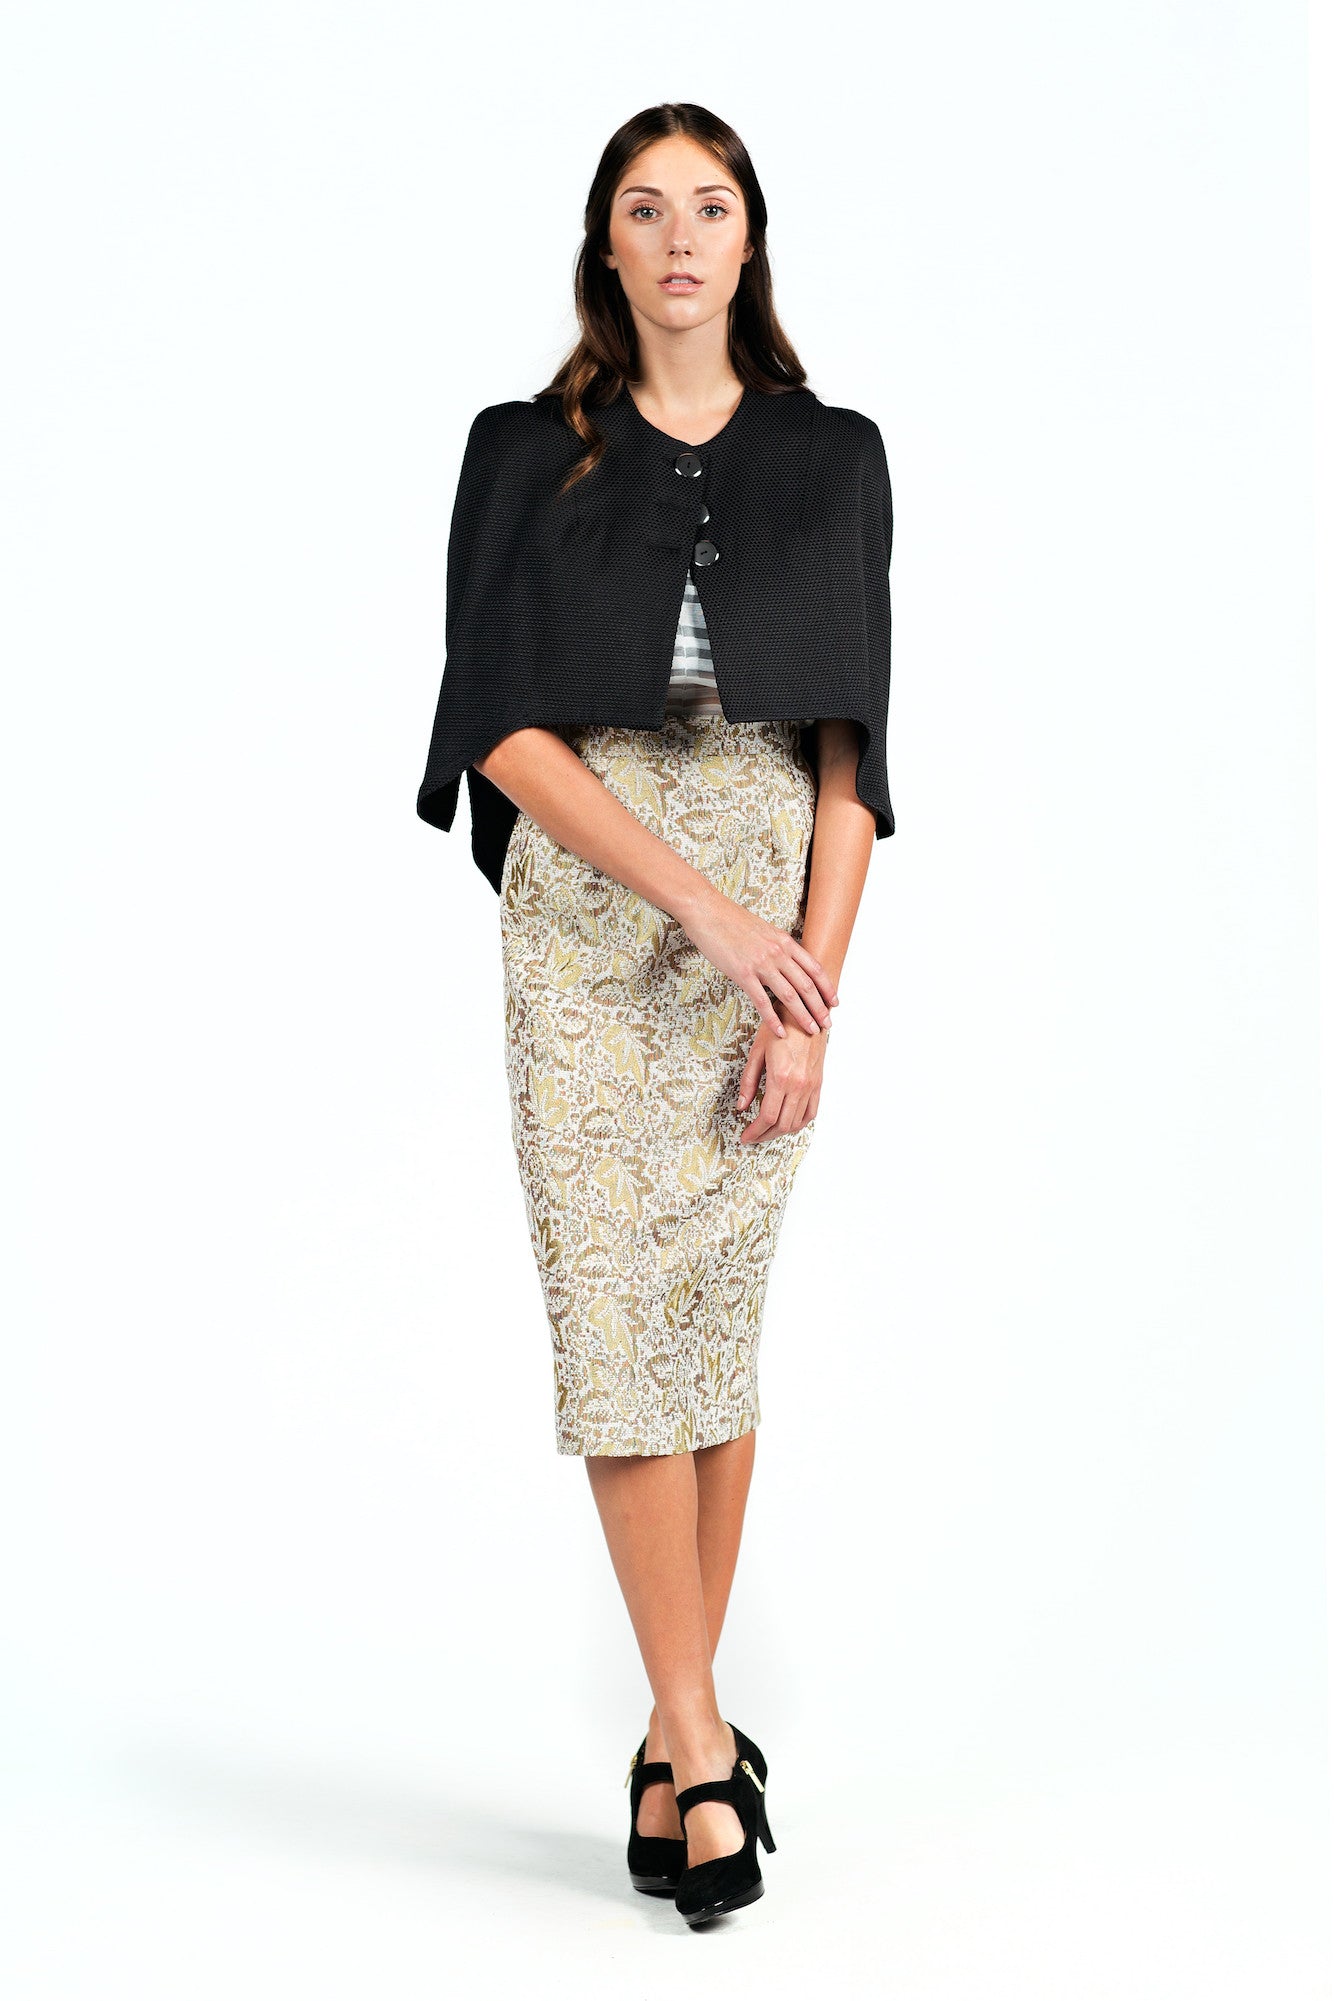 Textured High-waisted Pencil Skirt for All Seasons - Steve Guthrie - 2